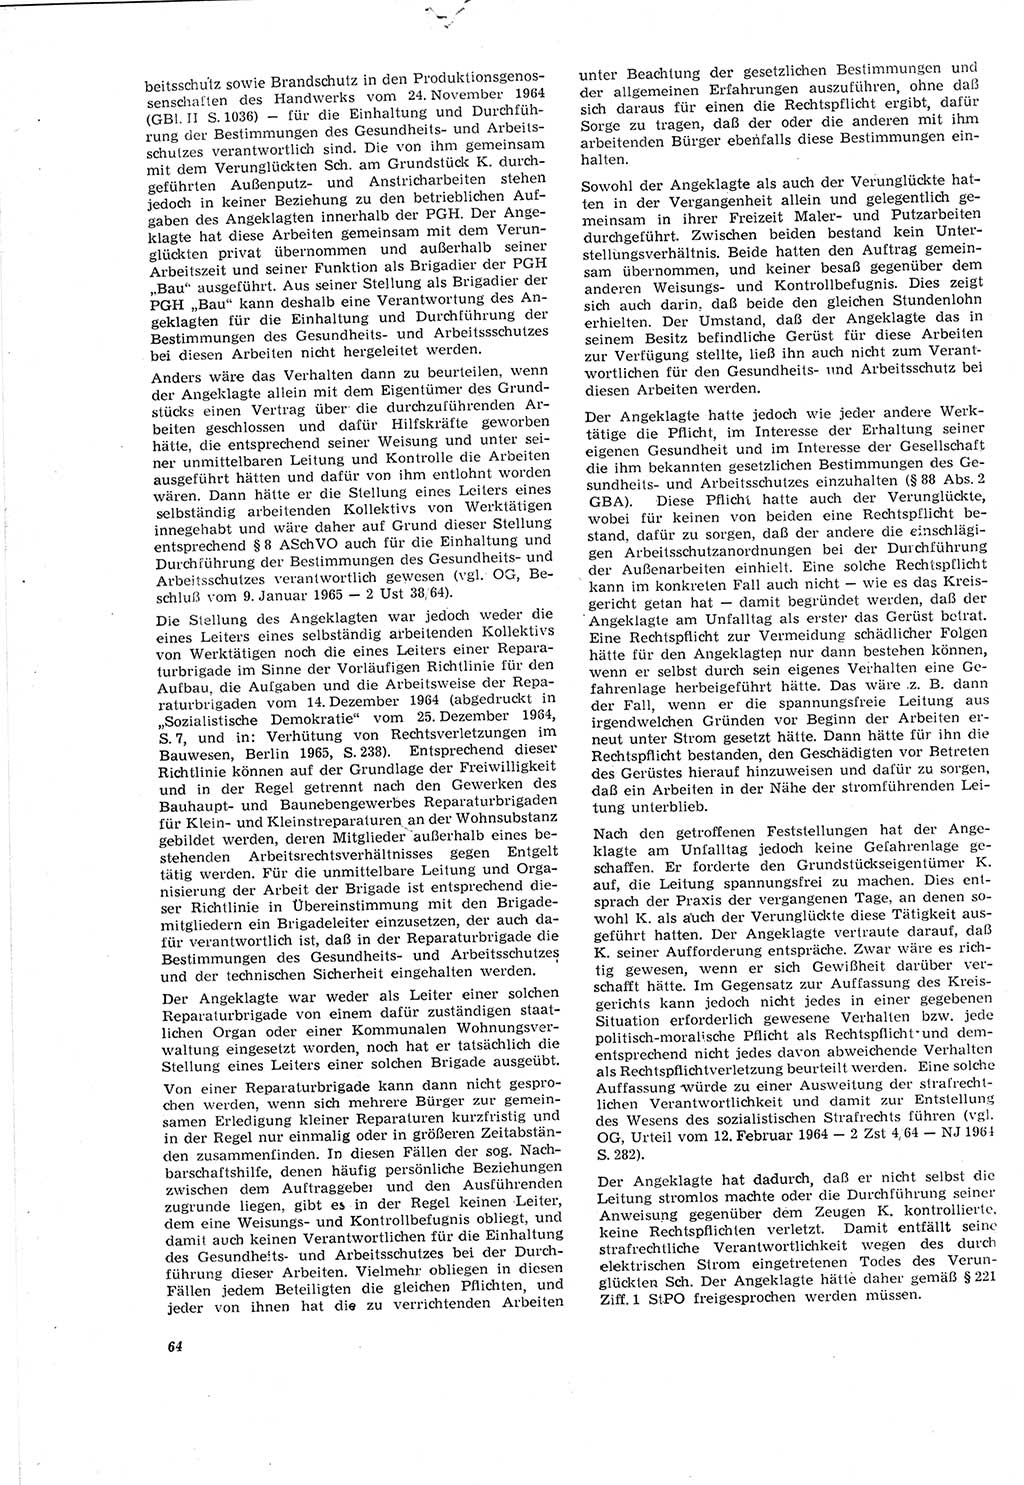 Neue Justiz (NJ), Zeitschrift für Recht und Rechtswissenschaft [Deutsche Demokratische Republik (DDR)], 20. Jahrgang 1966, Seite 64 (NJ DDR 1966, S. 64)